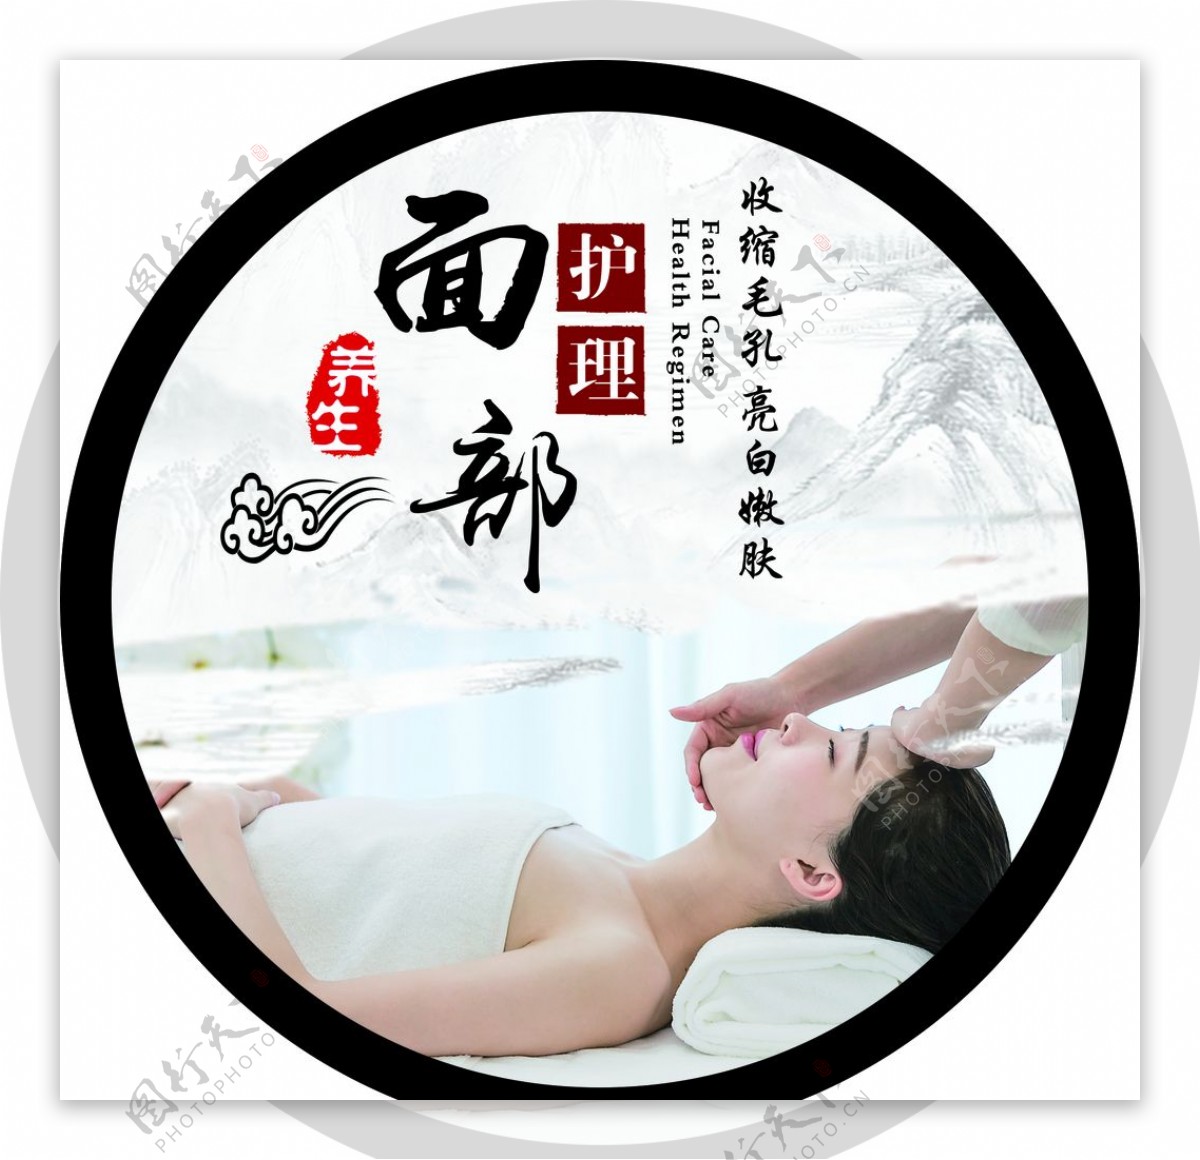 广州豪华水疗 | 按摩和面部护理 | 四季酒店